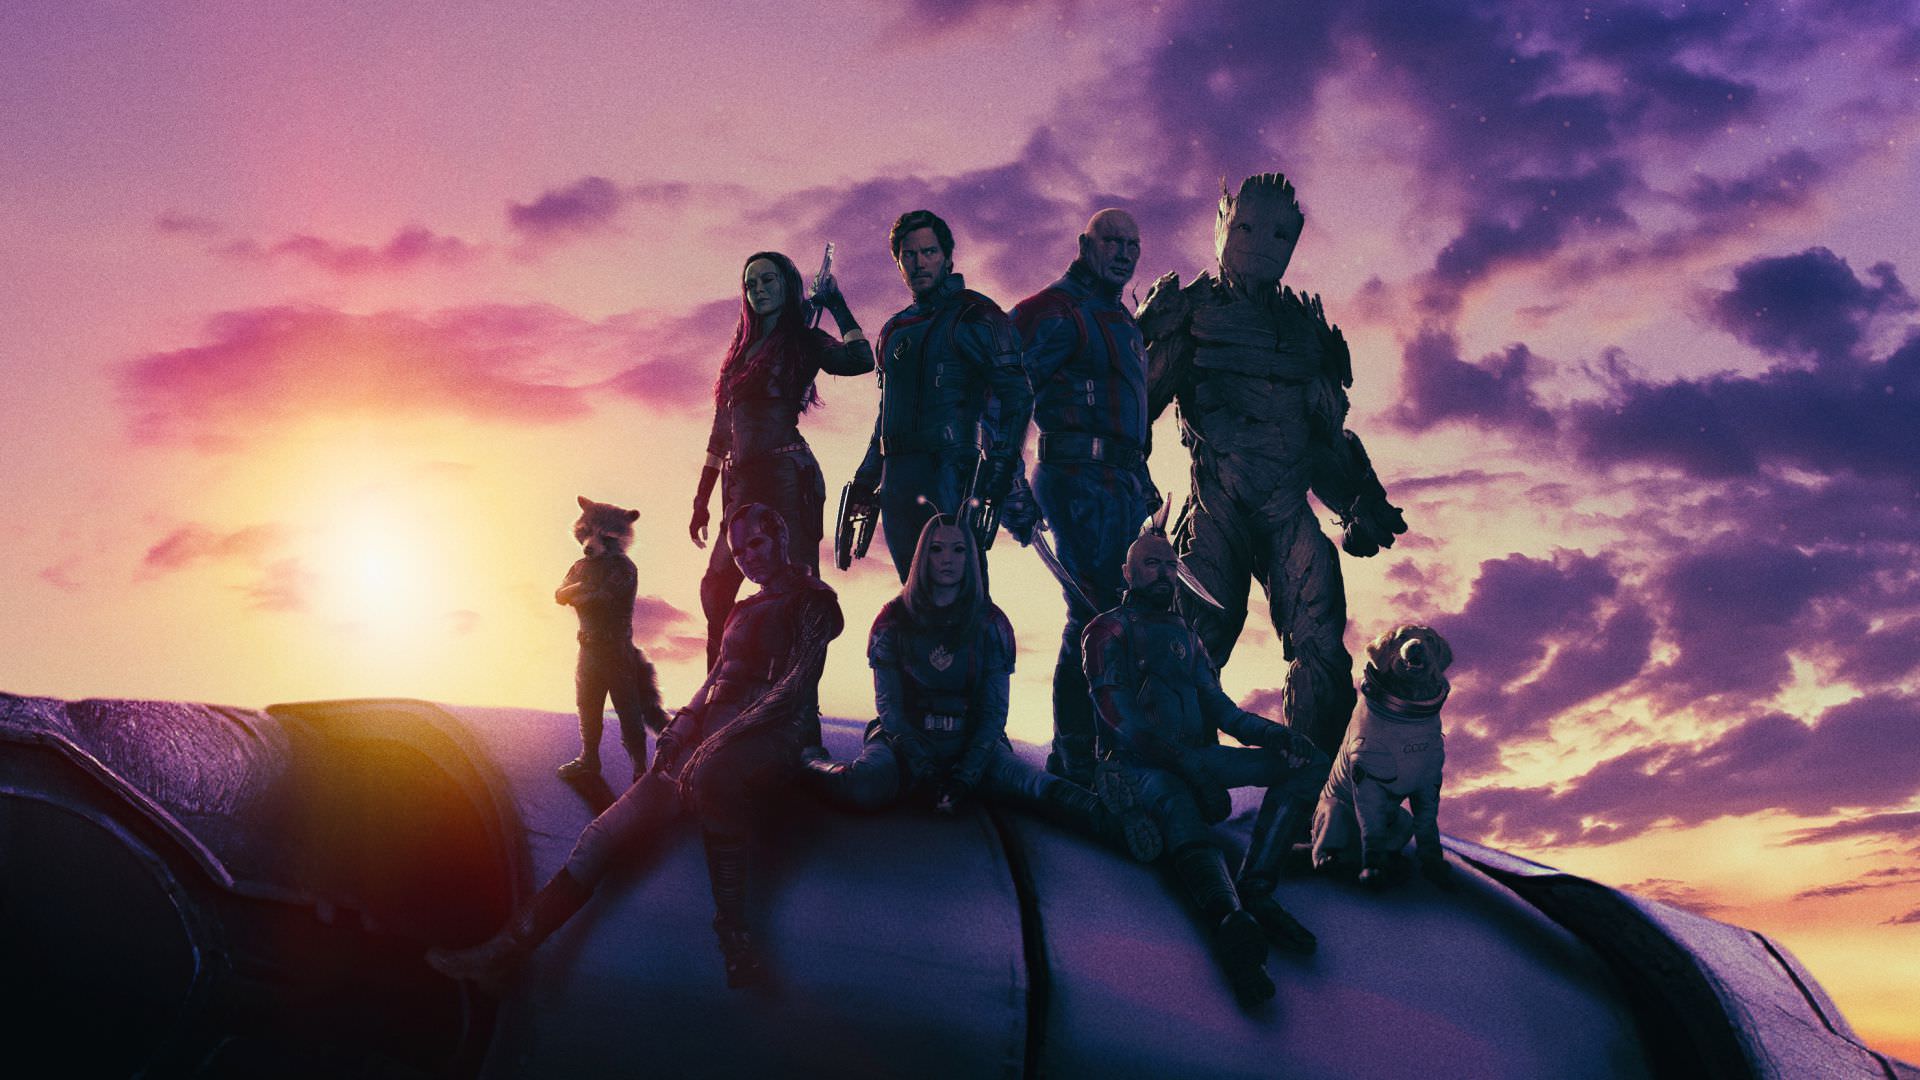 نمایش آخرین ماموریت گروه نگهبانان کهکشان در تریلر جدید Guardians of the Galaxy 3